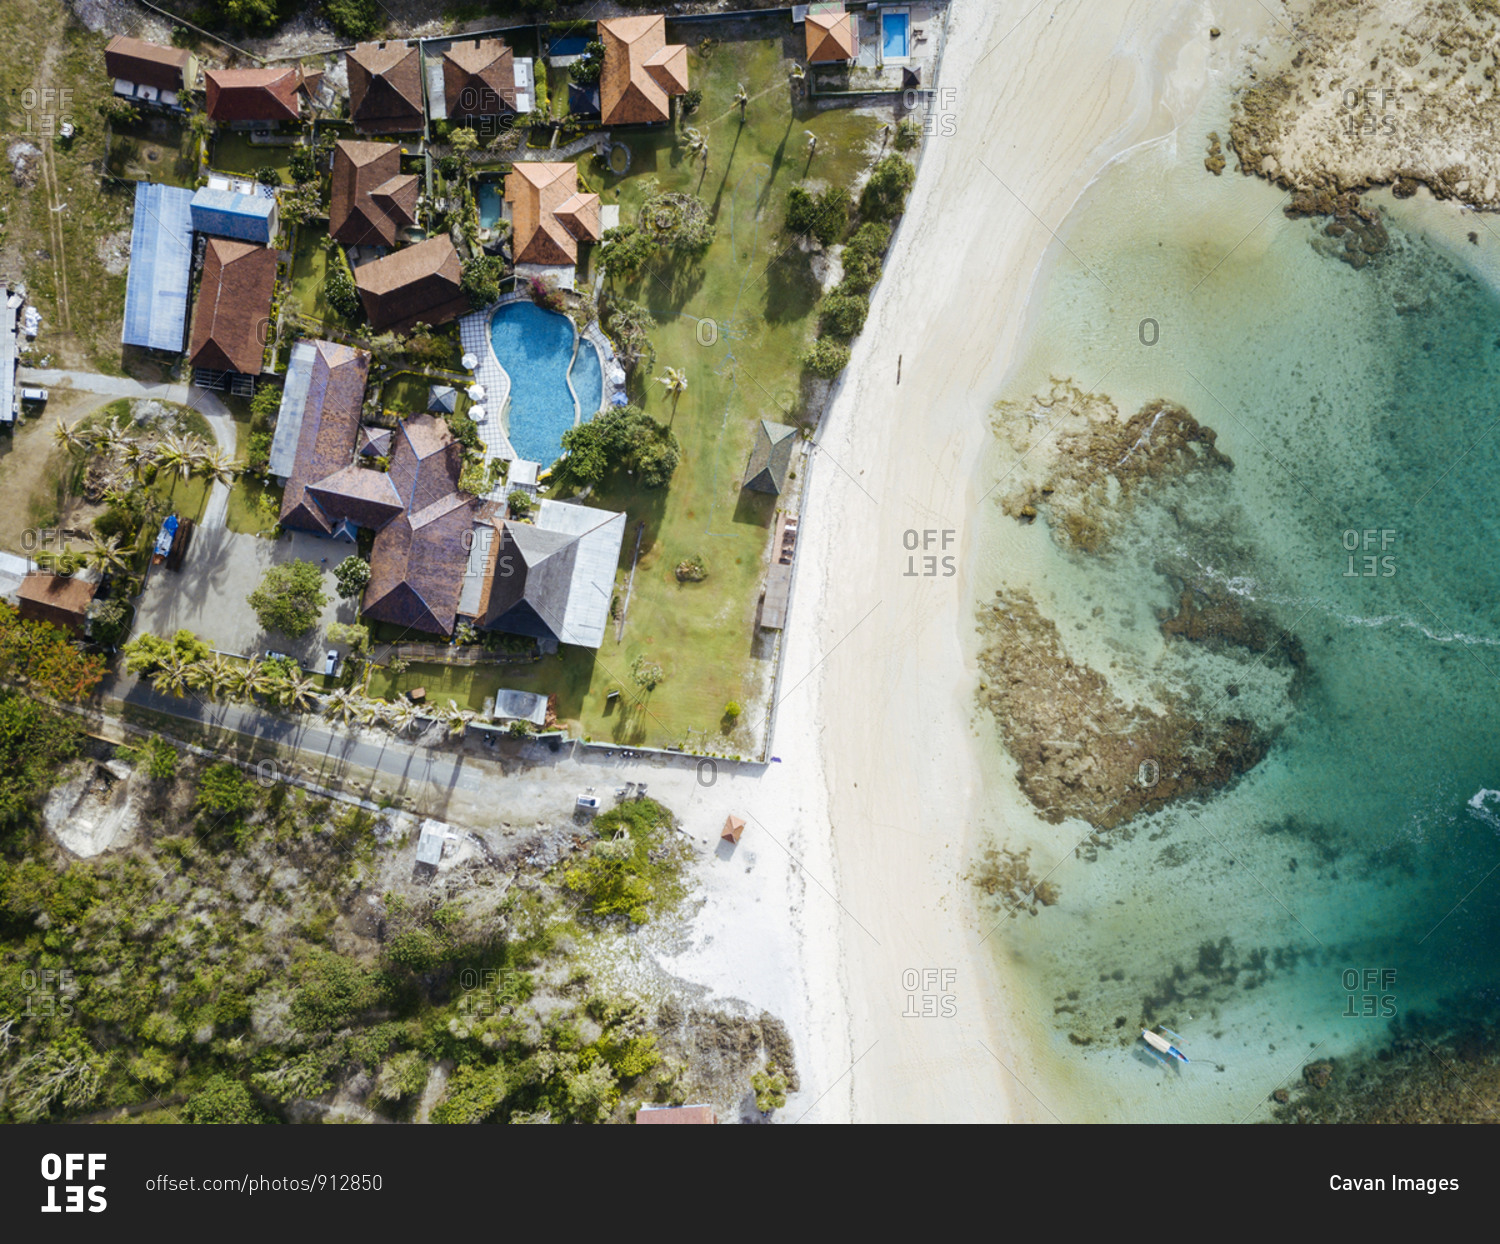 Aerial view of tropical resort at ocean coastline